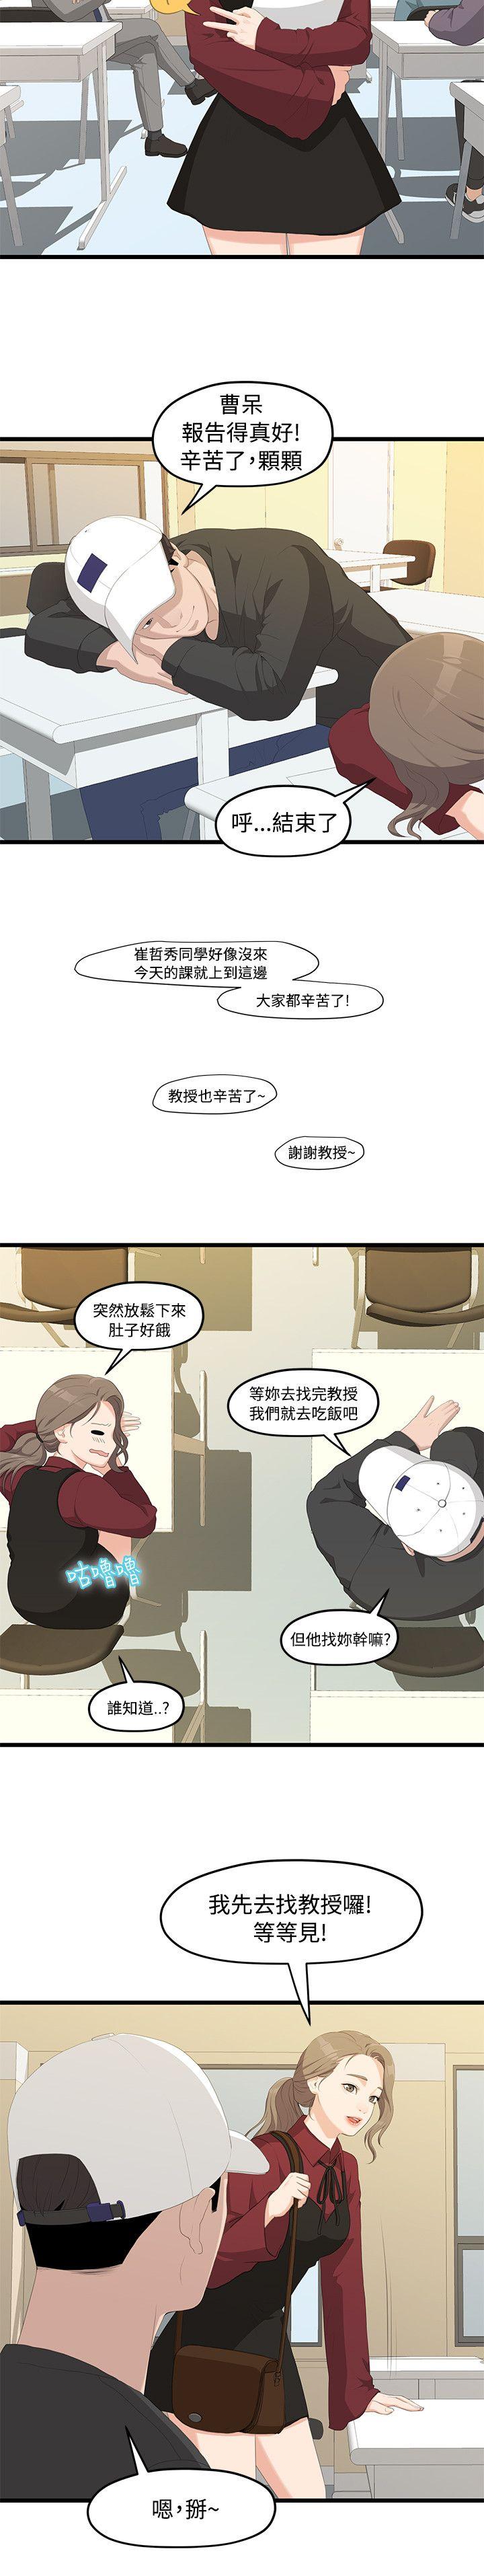 韩国污漫画 我們的非常關系 第1话 24